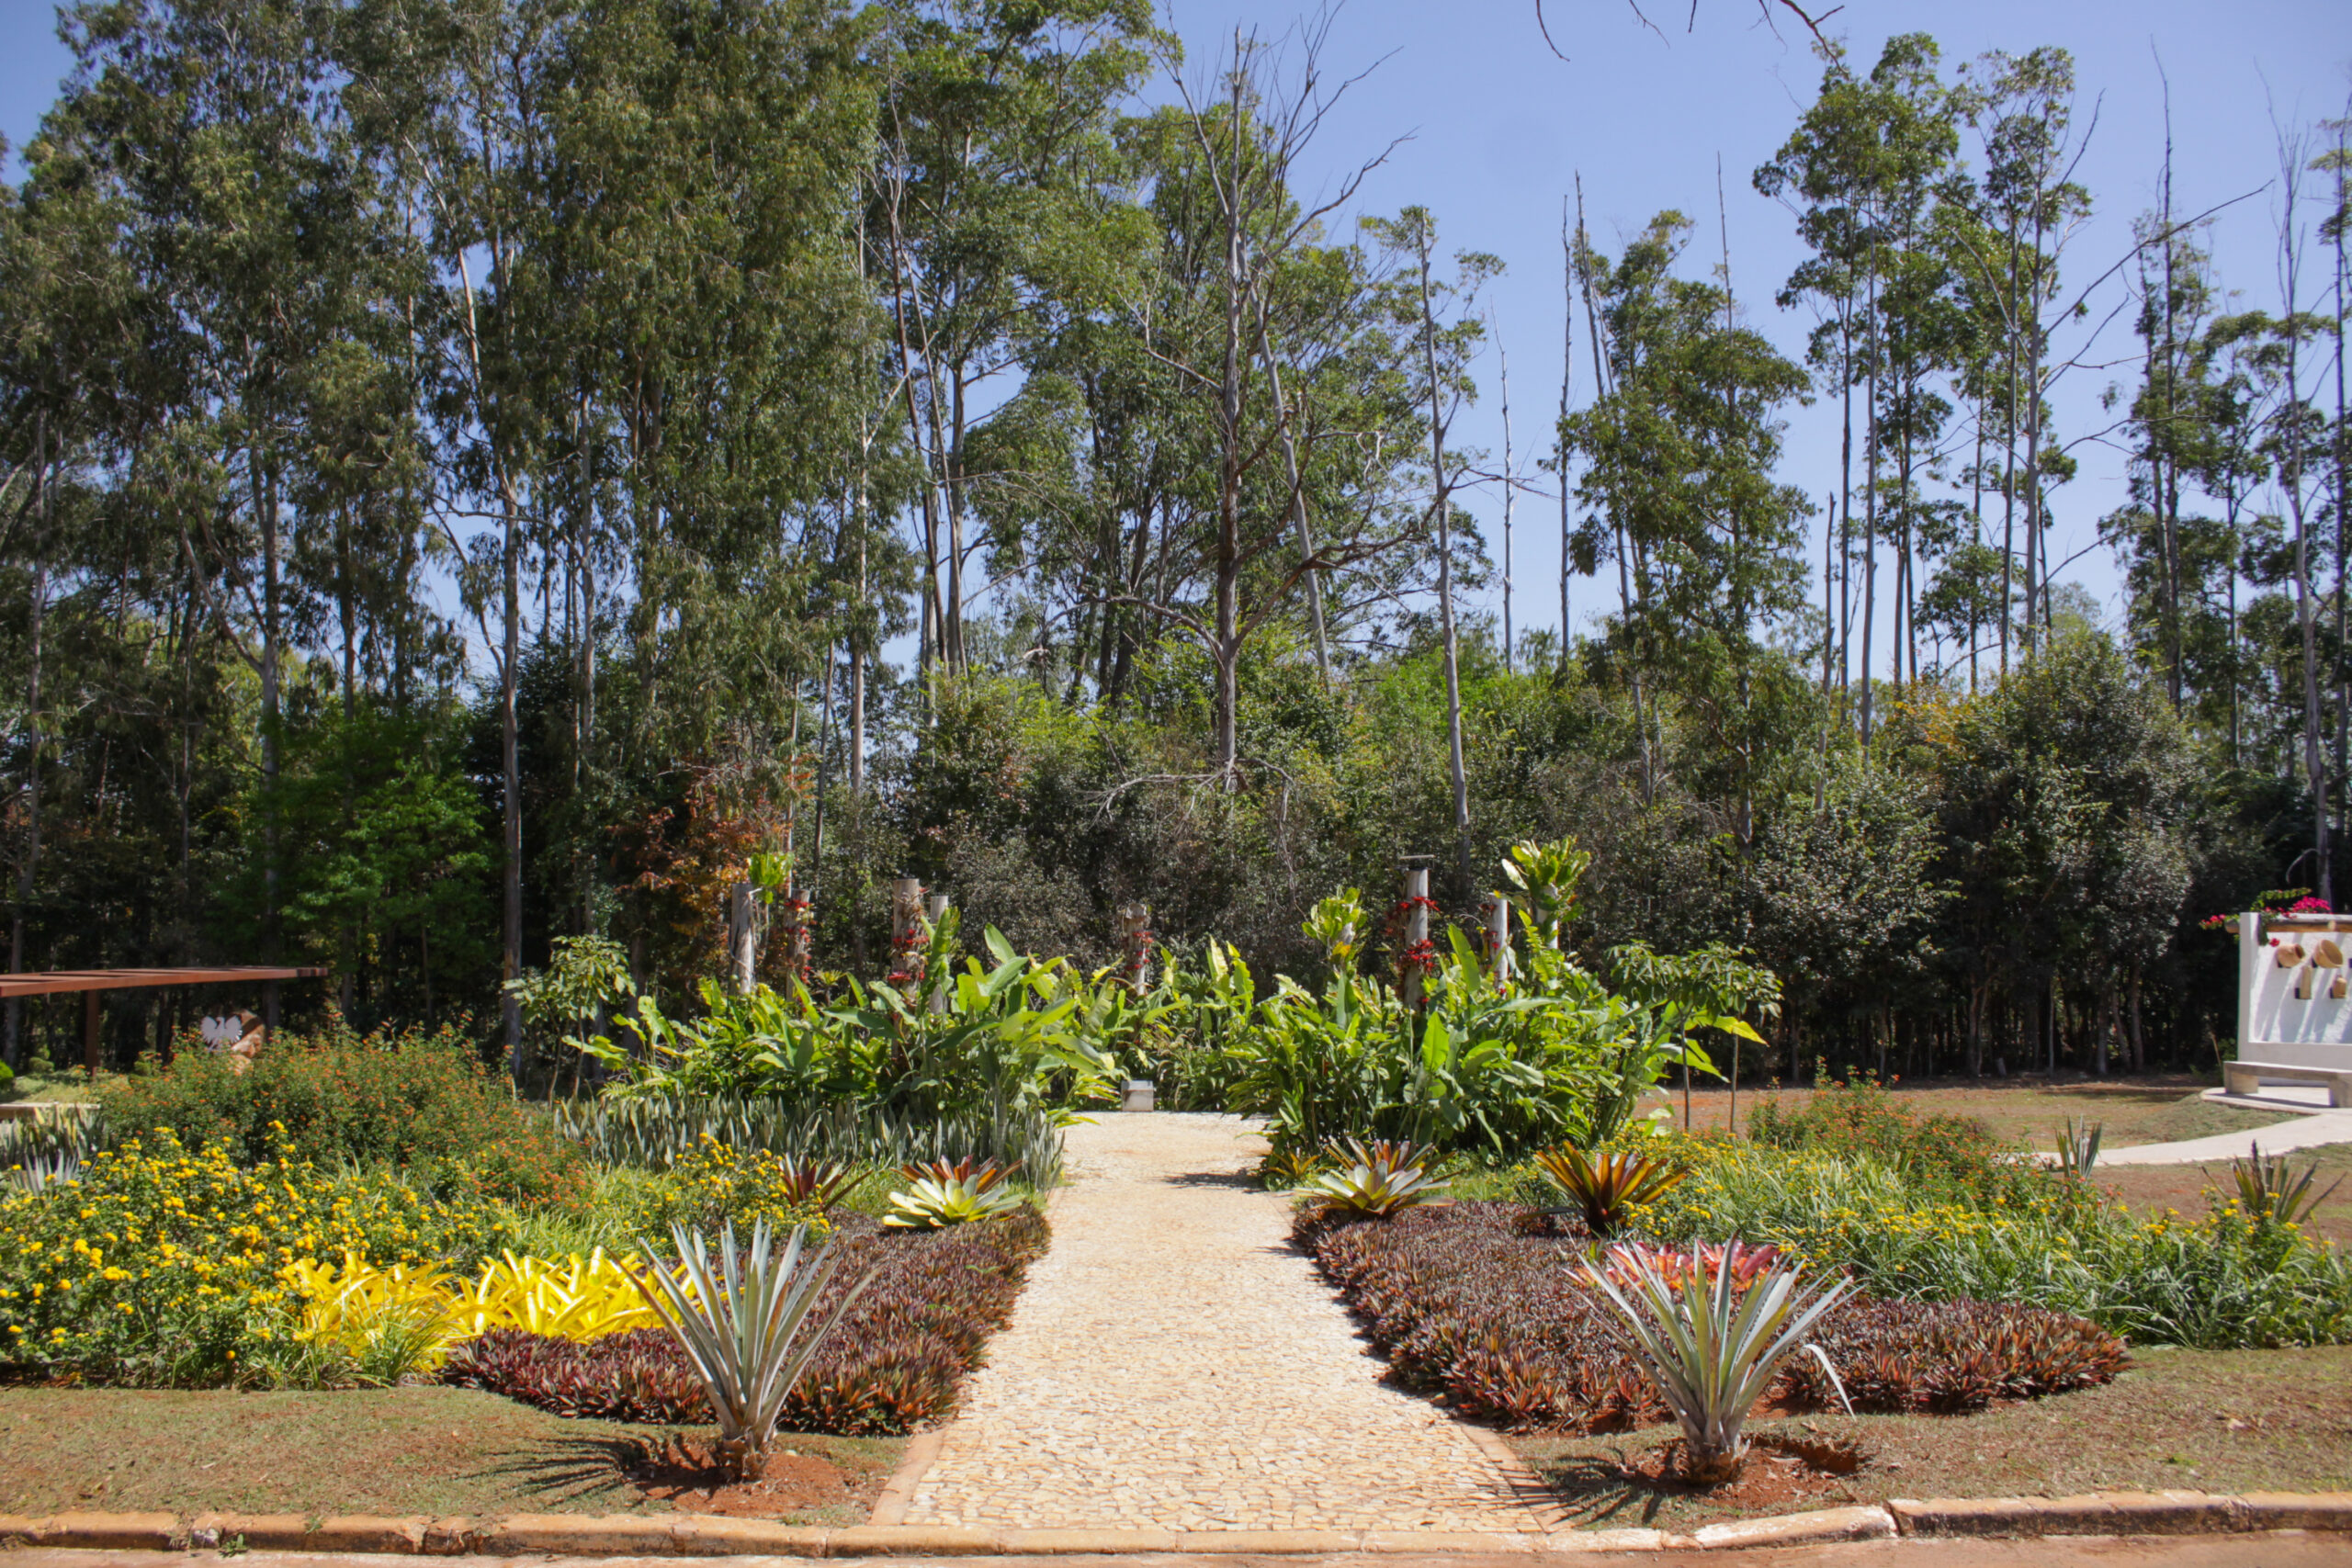 Jardim Botânico ganhou parques ornamentais com espécies típicas de outros países, simbolizando a união de culturas